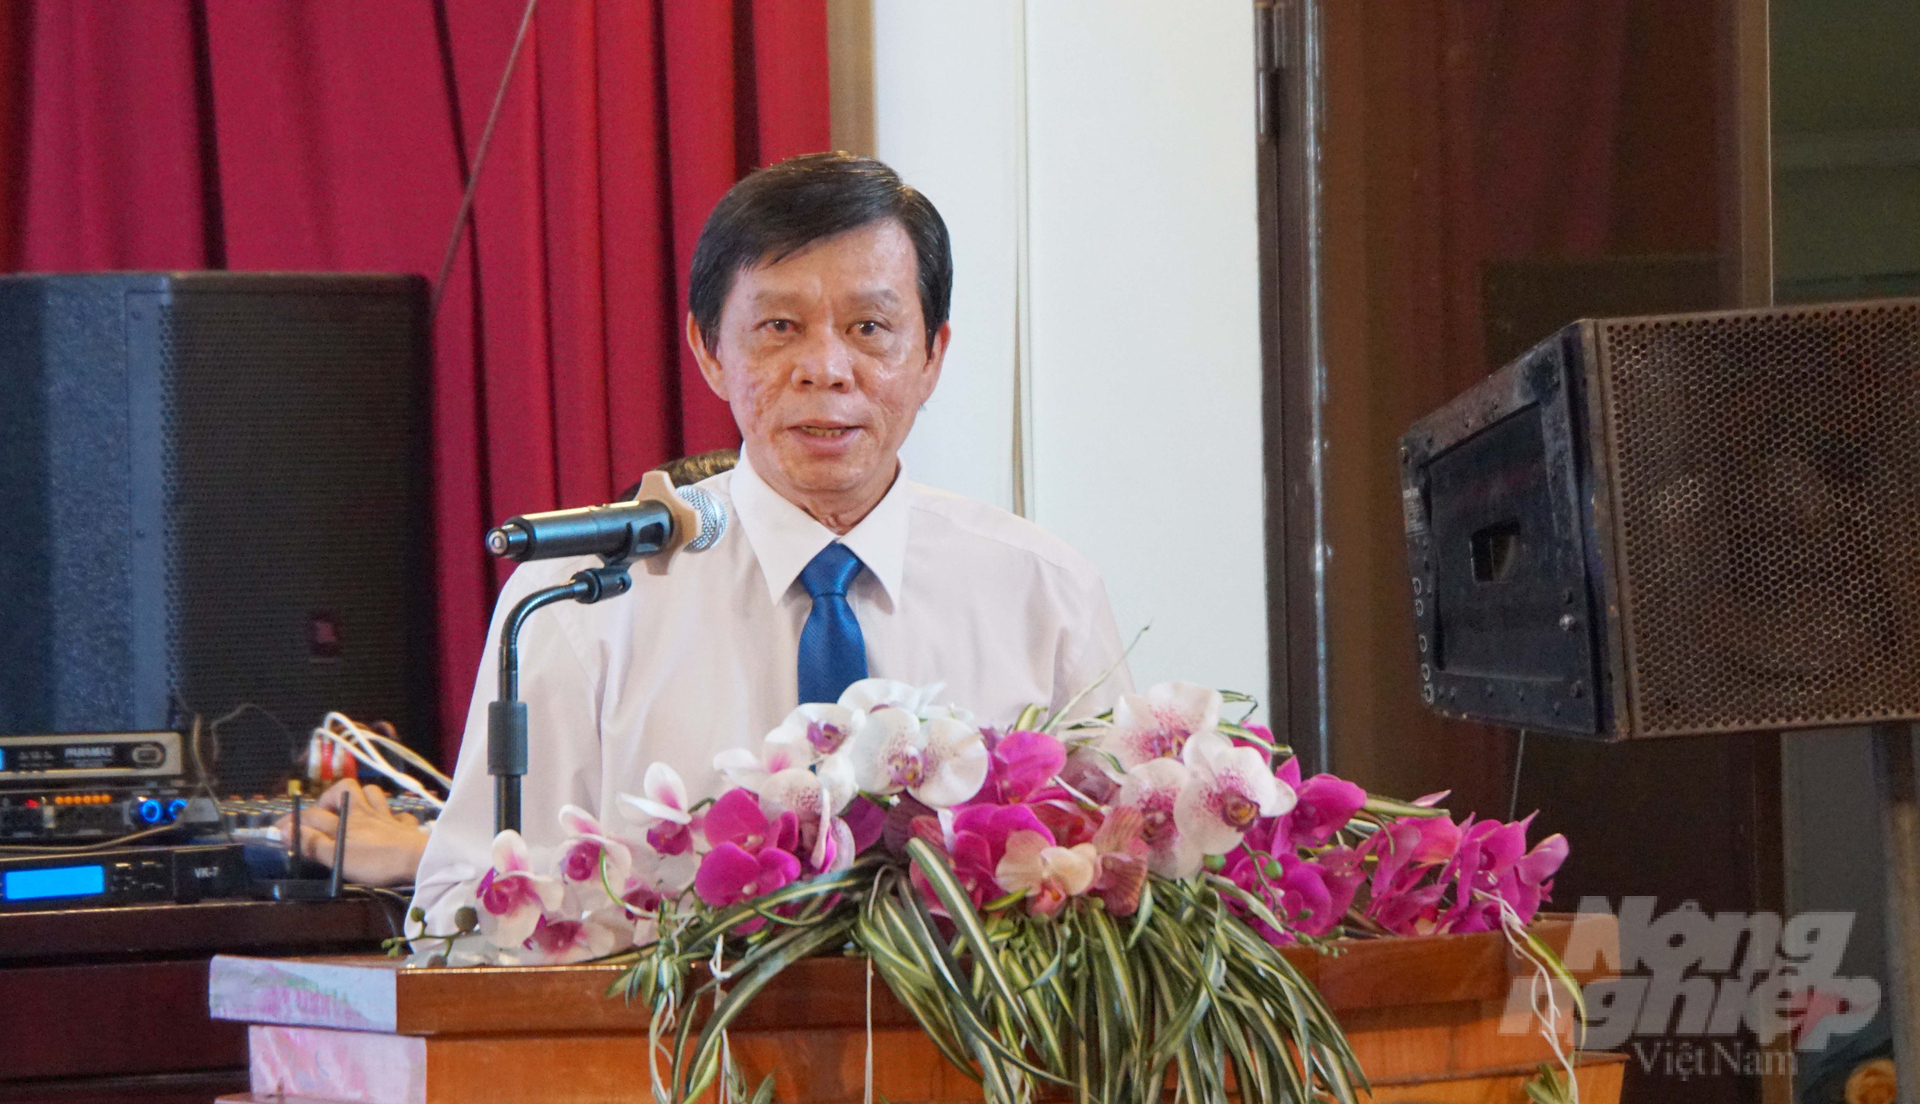 Ông Nguyễn Ngọc Thương ôn lại kỉ niệm 30 năm thành lập và phát triển của Liên minh HTX tỉnh Bà Rịa - Vũng Tàu. Ảnh: Lê Bình.